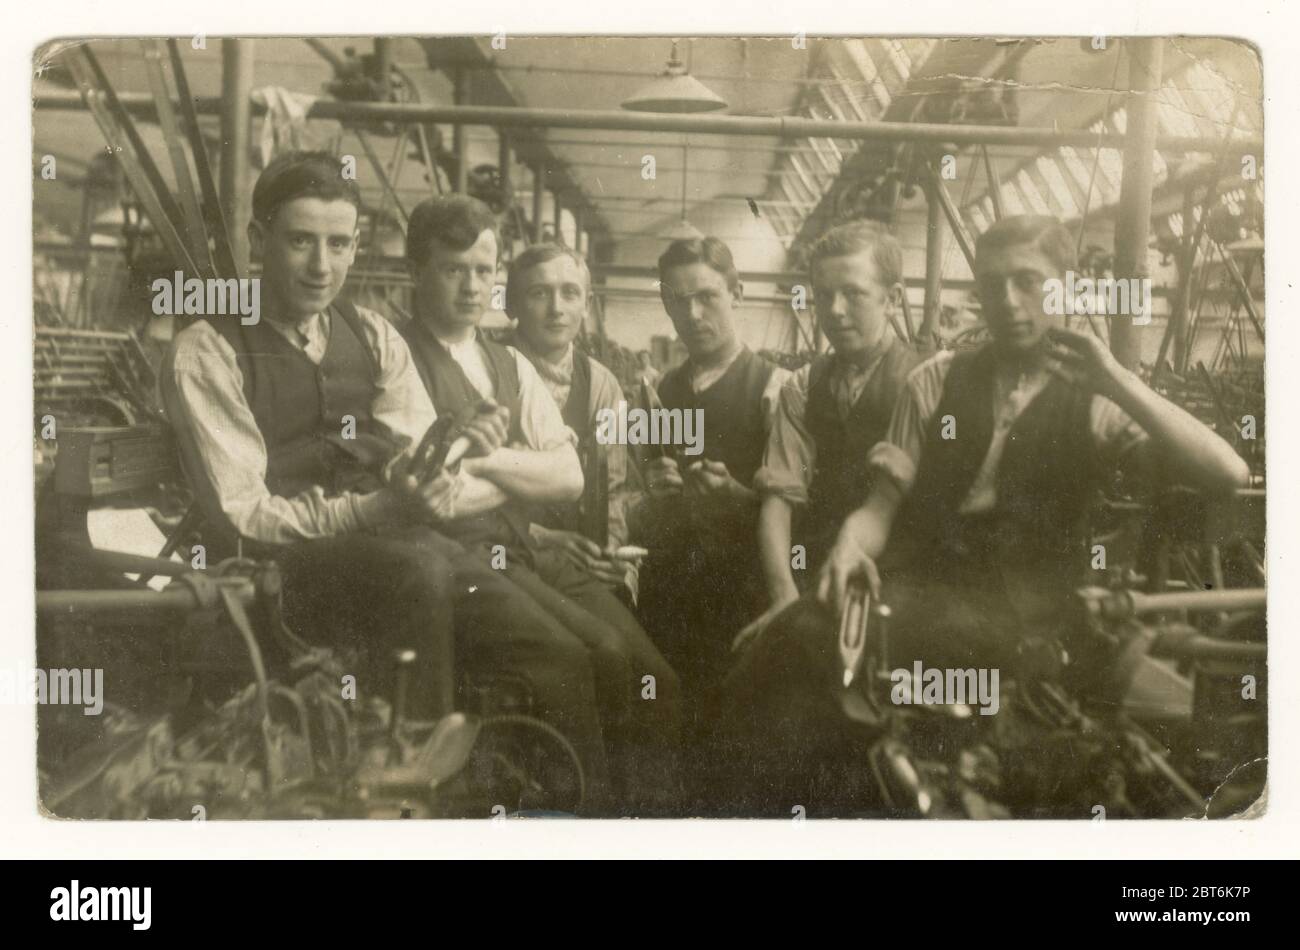 Originale inizio del 1900 's cartolina di gruppo di giovani lavoratori di mulino di cotone maschio seduti accanto a macchine primo apparire, mostrando interni del mulino uno dei lads sta tenendo una 'navetta volante' suggerendo che sono tessitori, Blackburn, Lancashire, Inghilterra nord-occidentale, Regno Unito circa 1905 Foto Stock